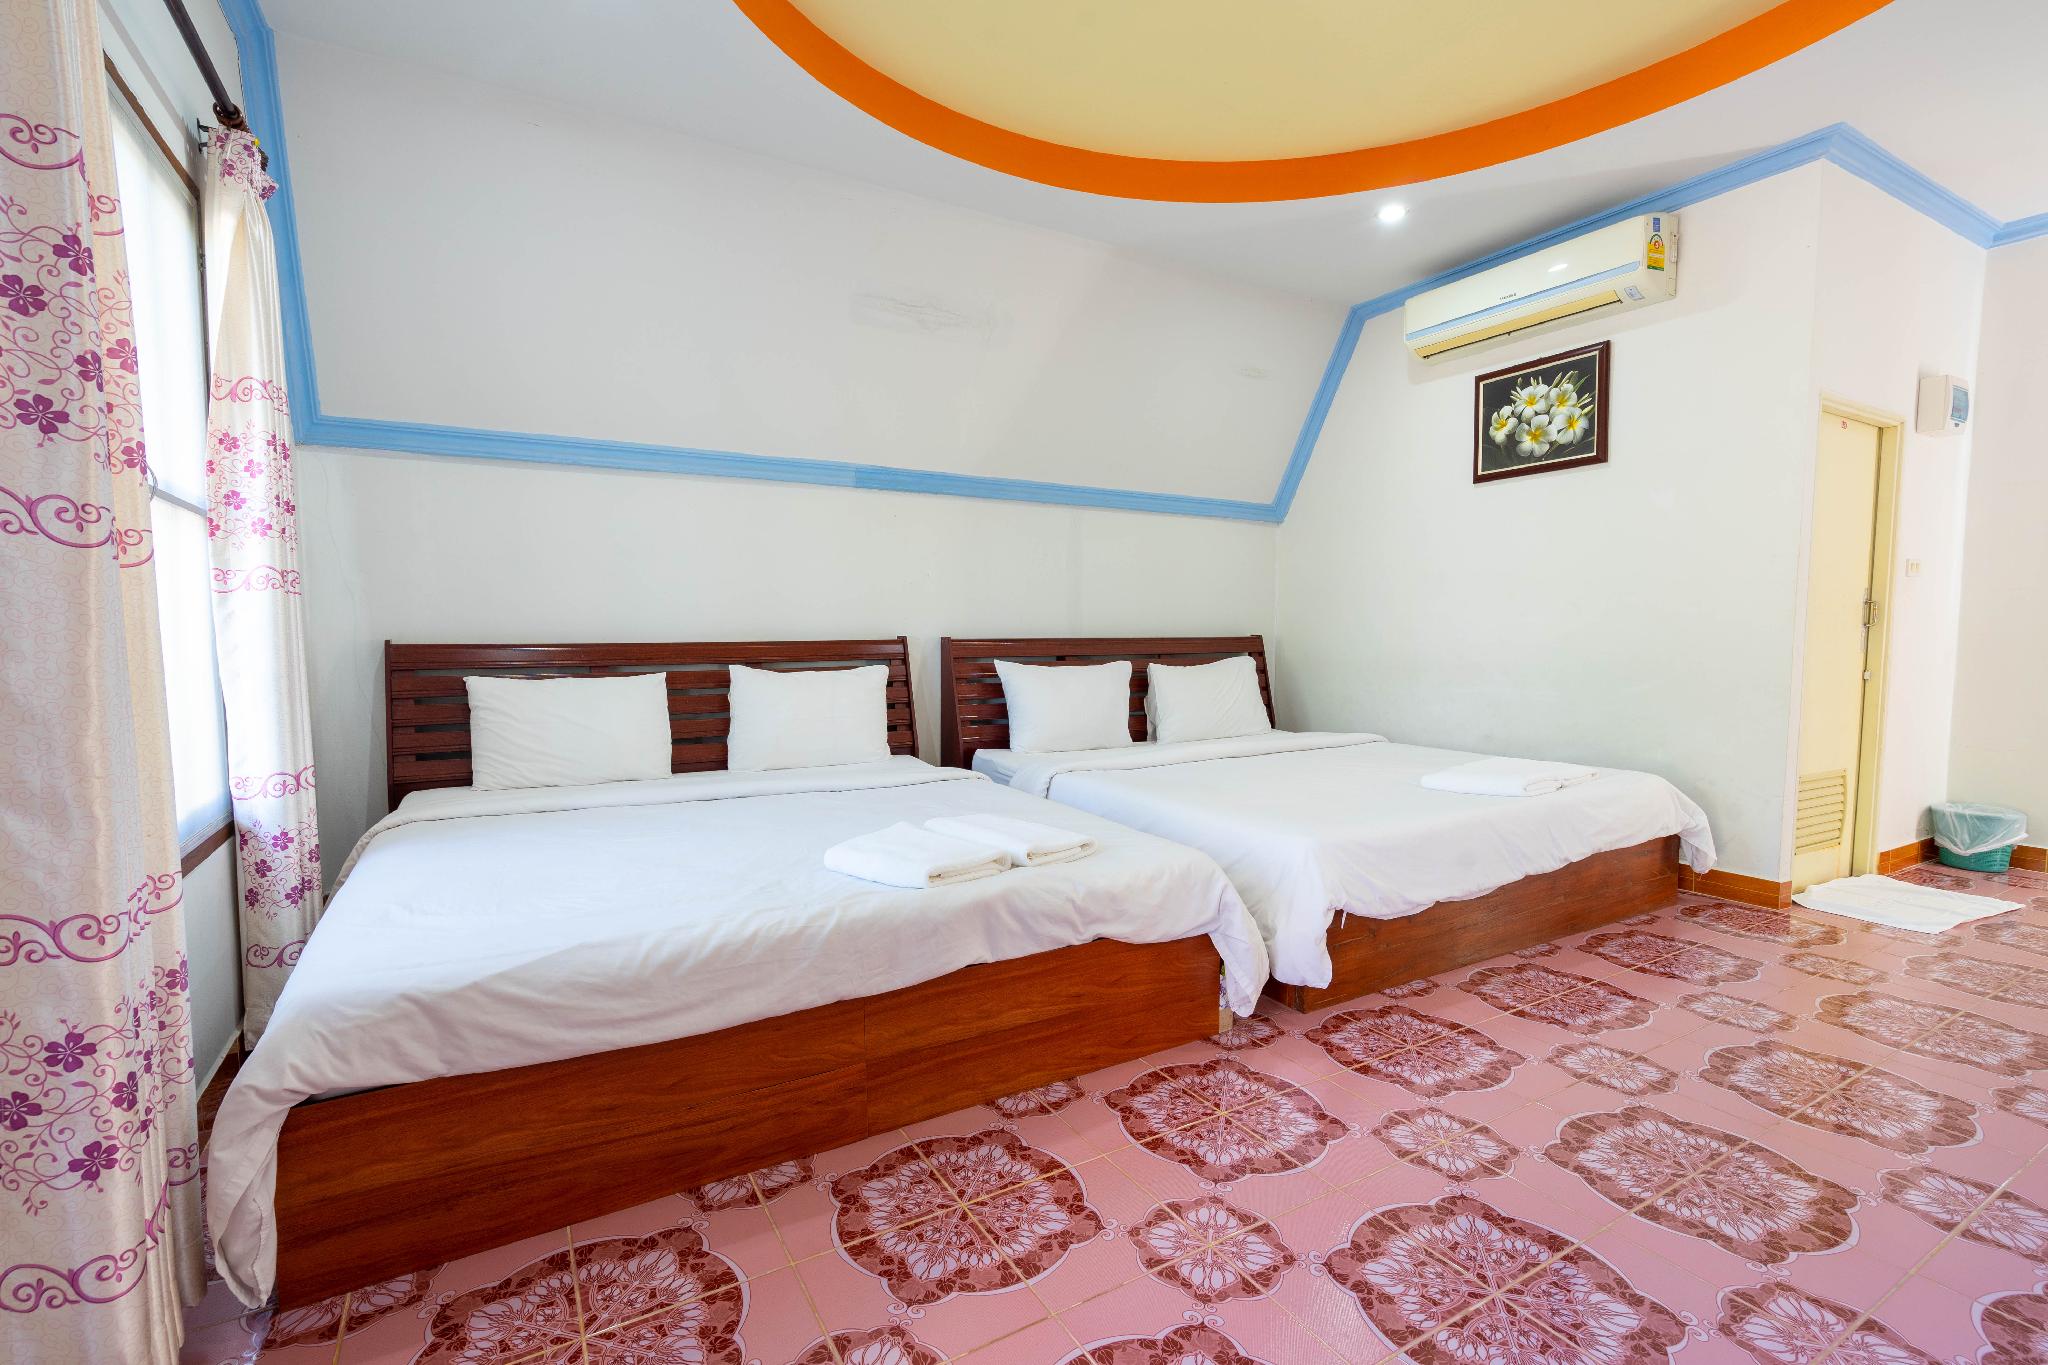 รีวิวไฮโซรีสอร์ท - โปรโมชั่นโรงแรม 3 ดาวในอุดรธานี | Trip.com